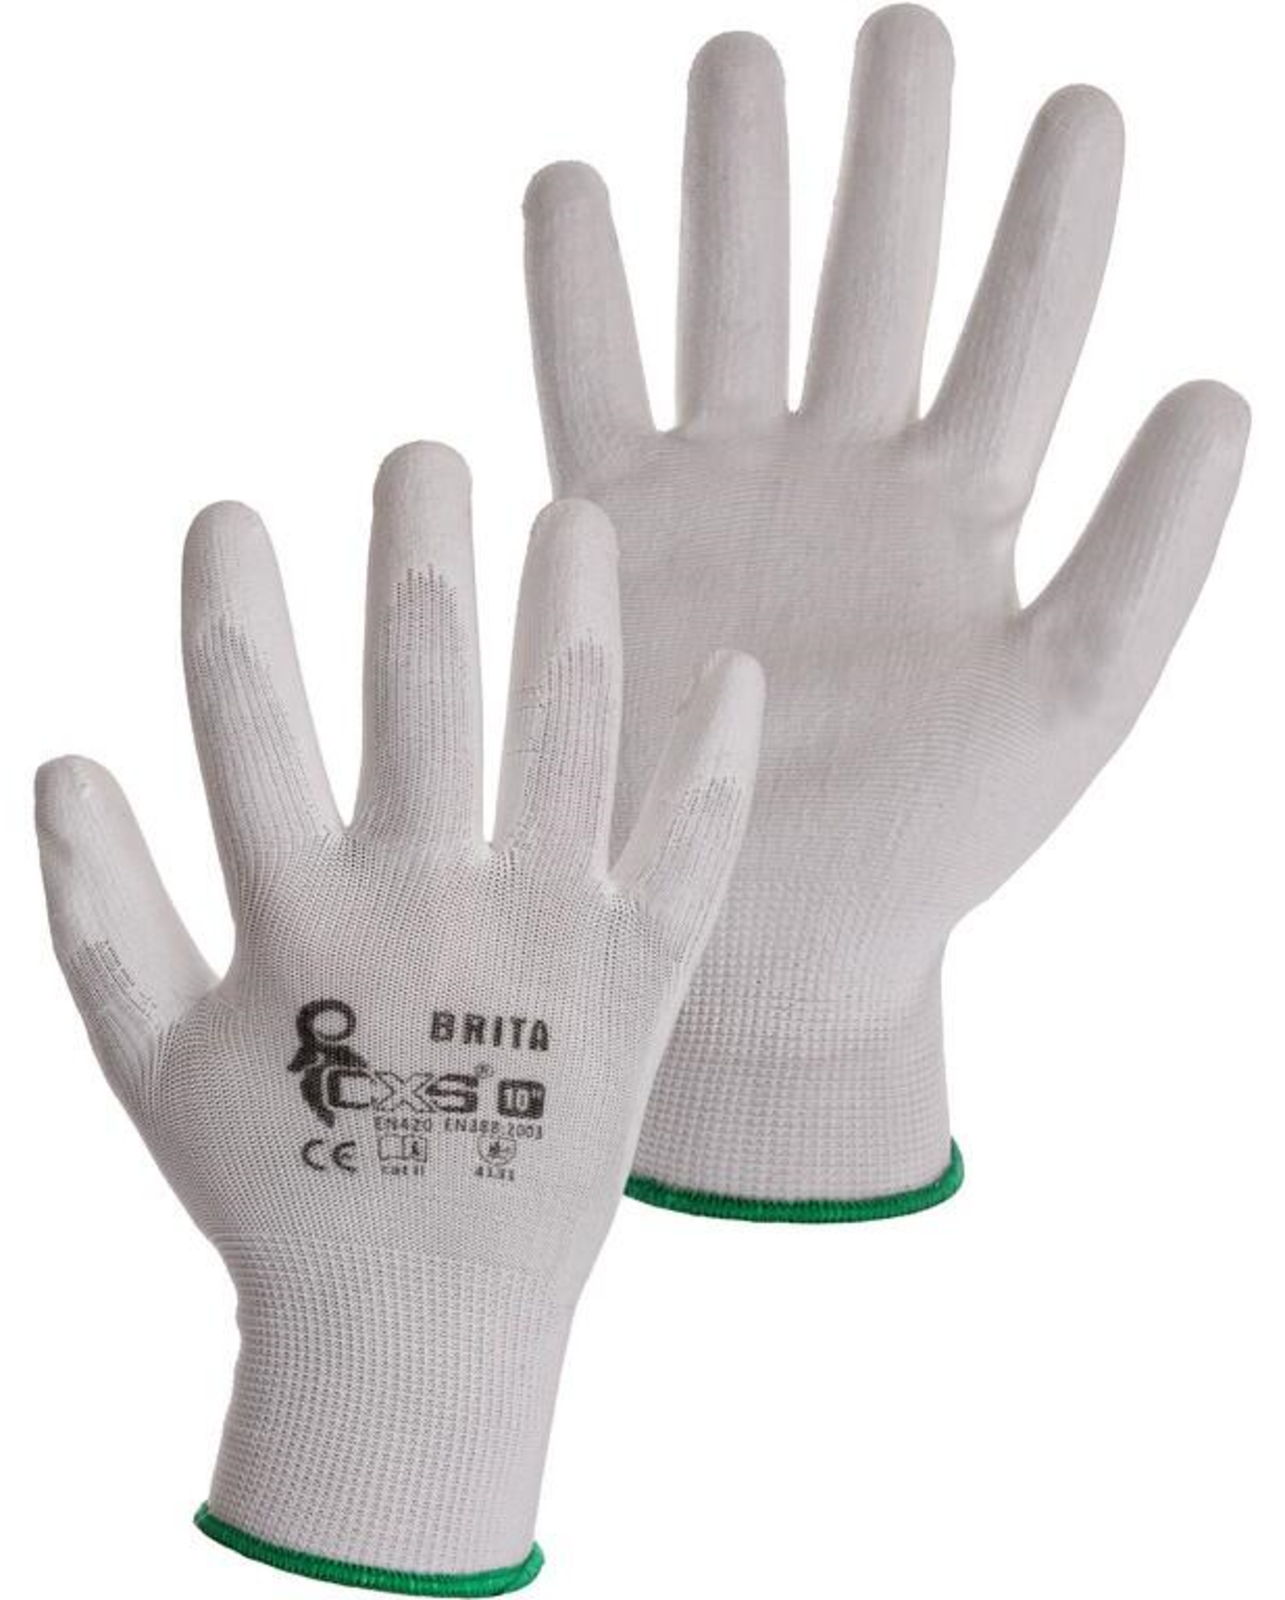 Pracovné rukavice CXS Brita biele - veľkosť: 8/M, farba: biela